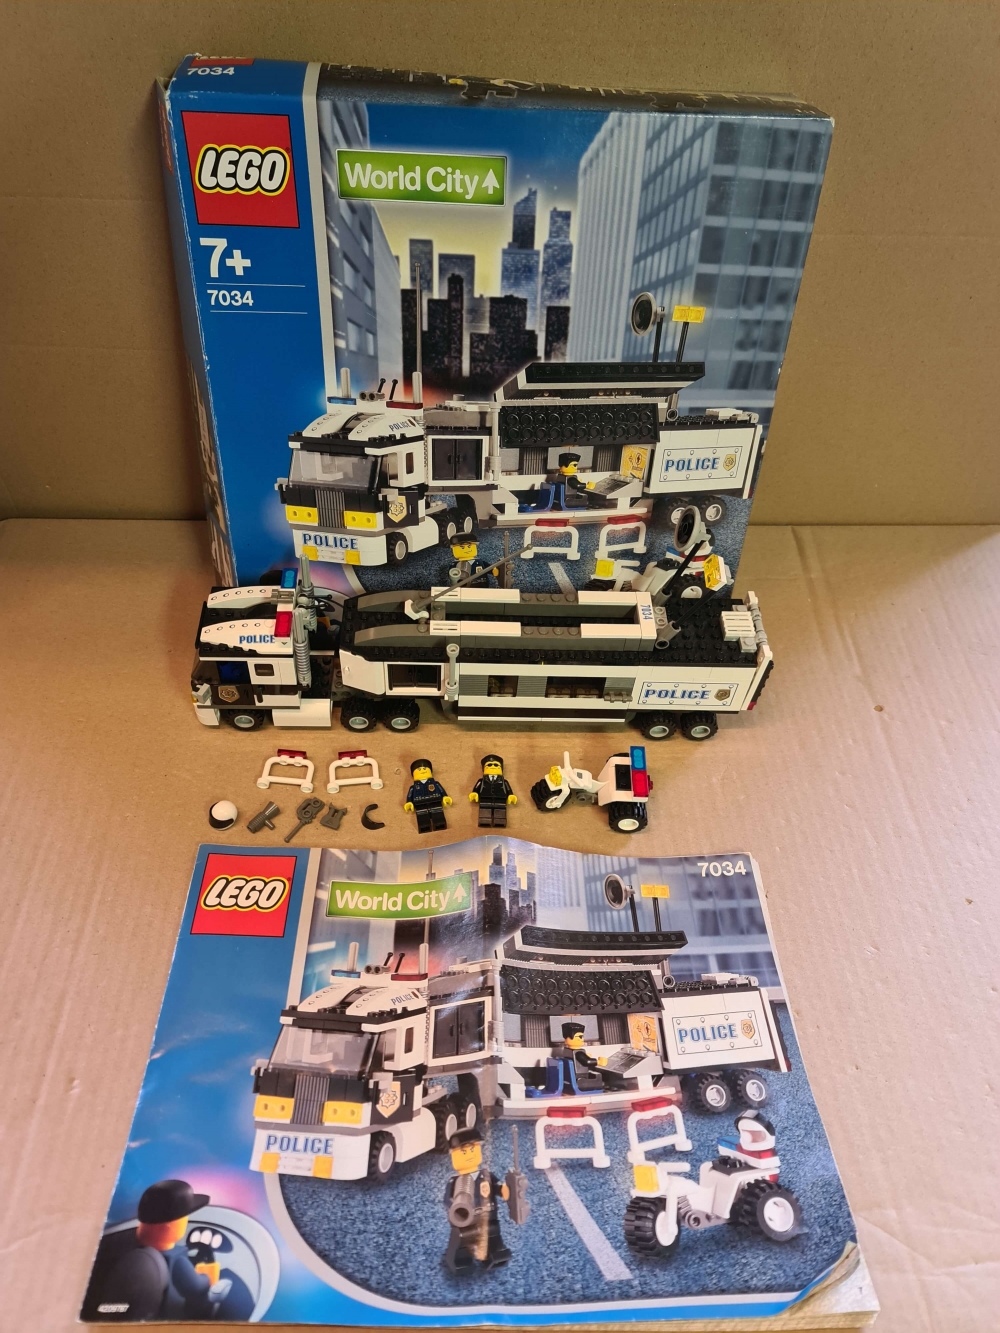 Sett 7034 fra Lego Town : World City serien.
Meget pent sett. Som nytt.
Komplett med manual og eske.